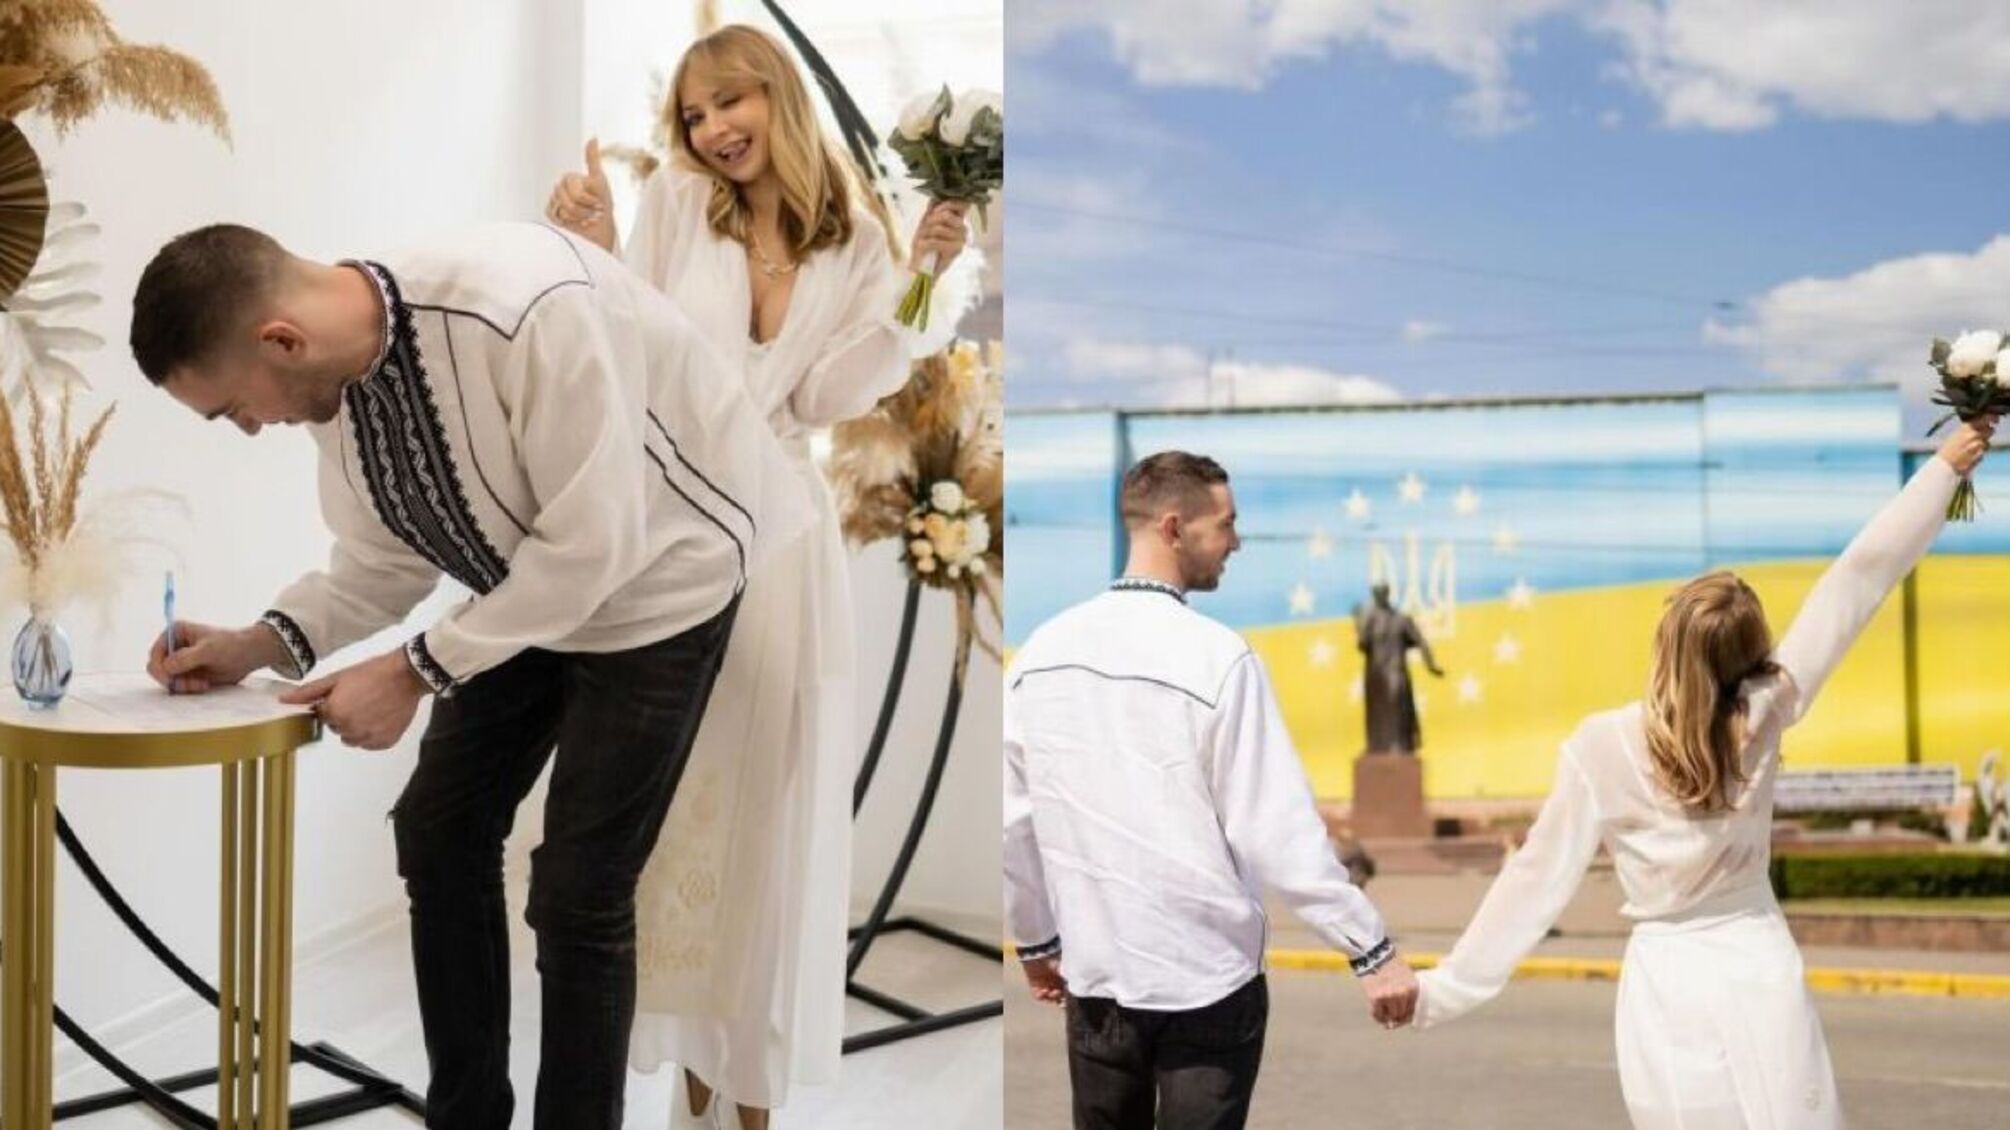 37-летняя Ирина Сопонару впервые вышла замуж и показала фото со своей свадьбы